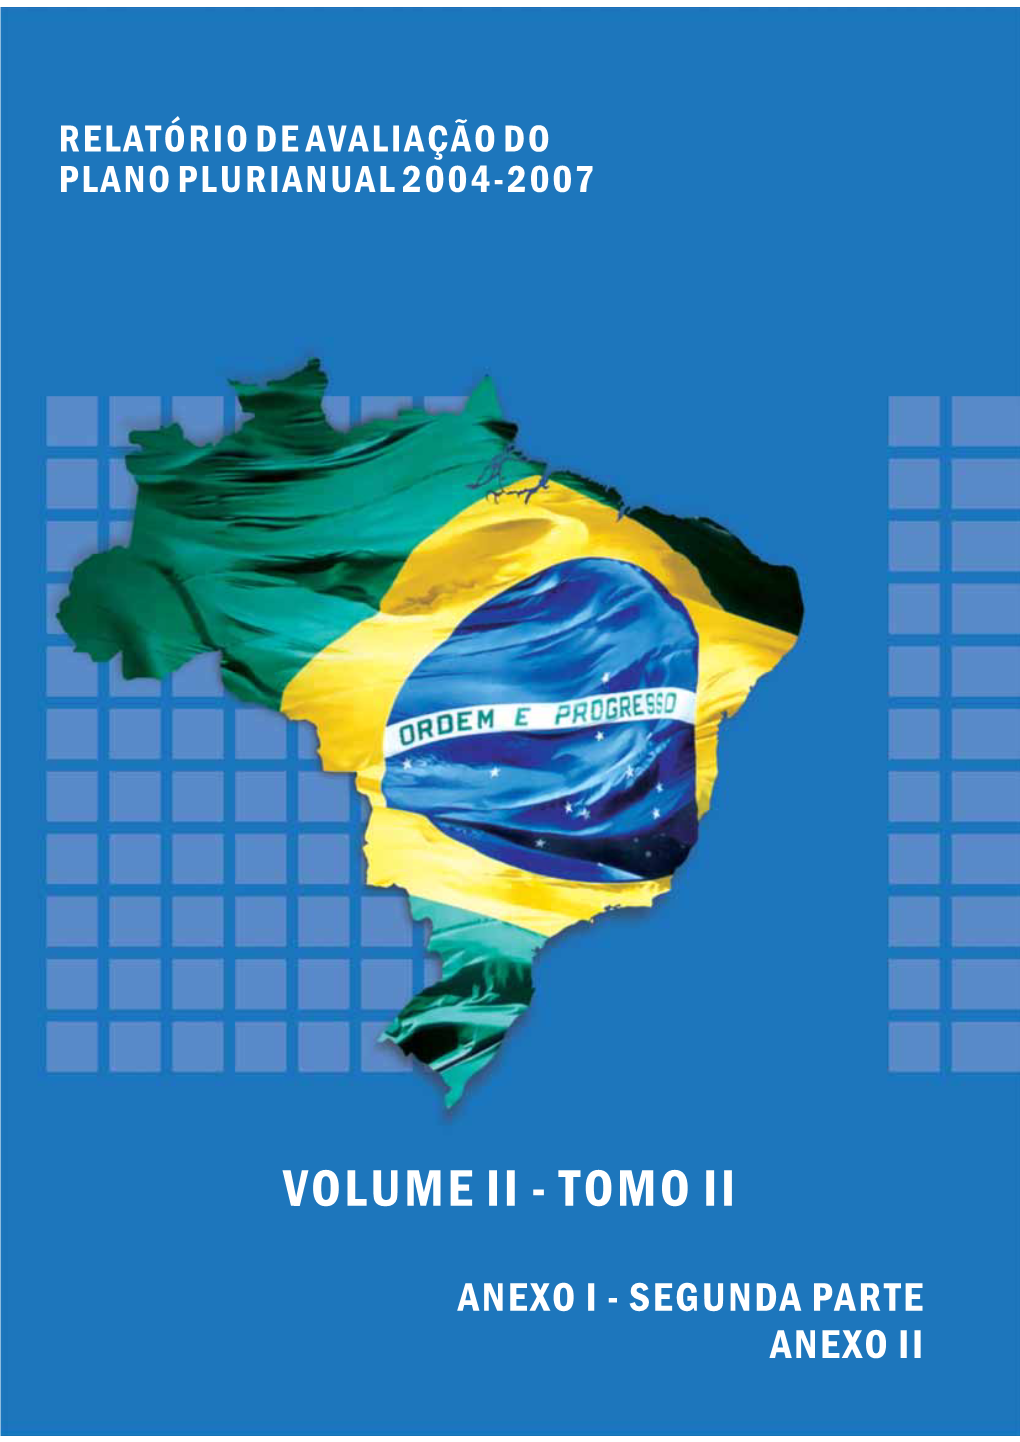 Volume Ii - Tomo Ii